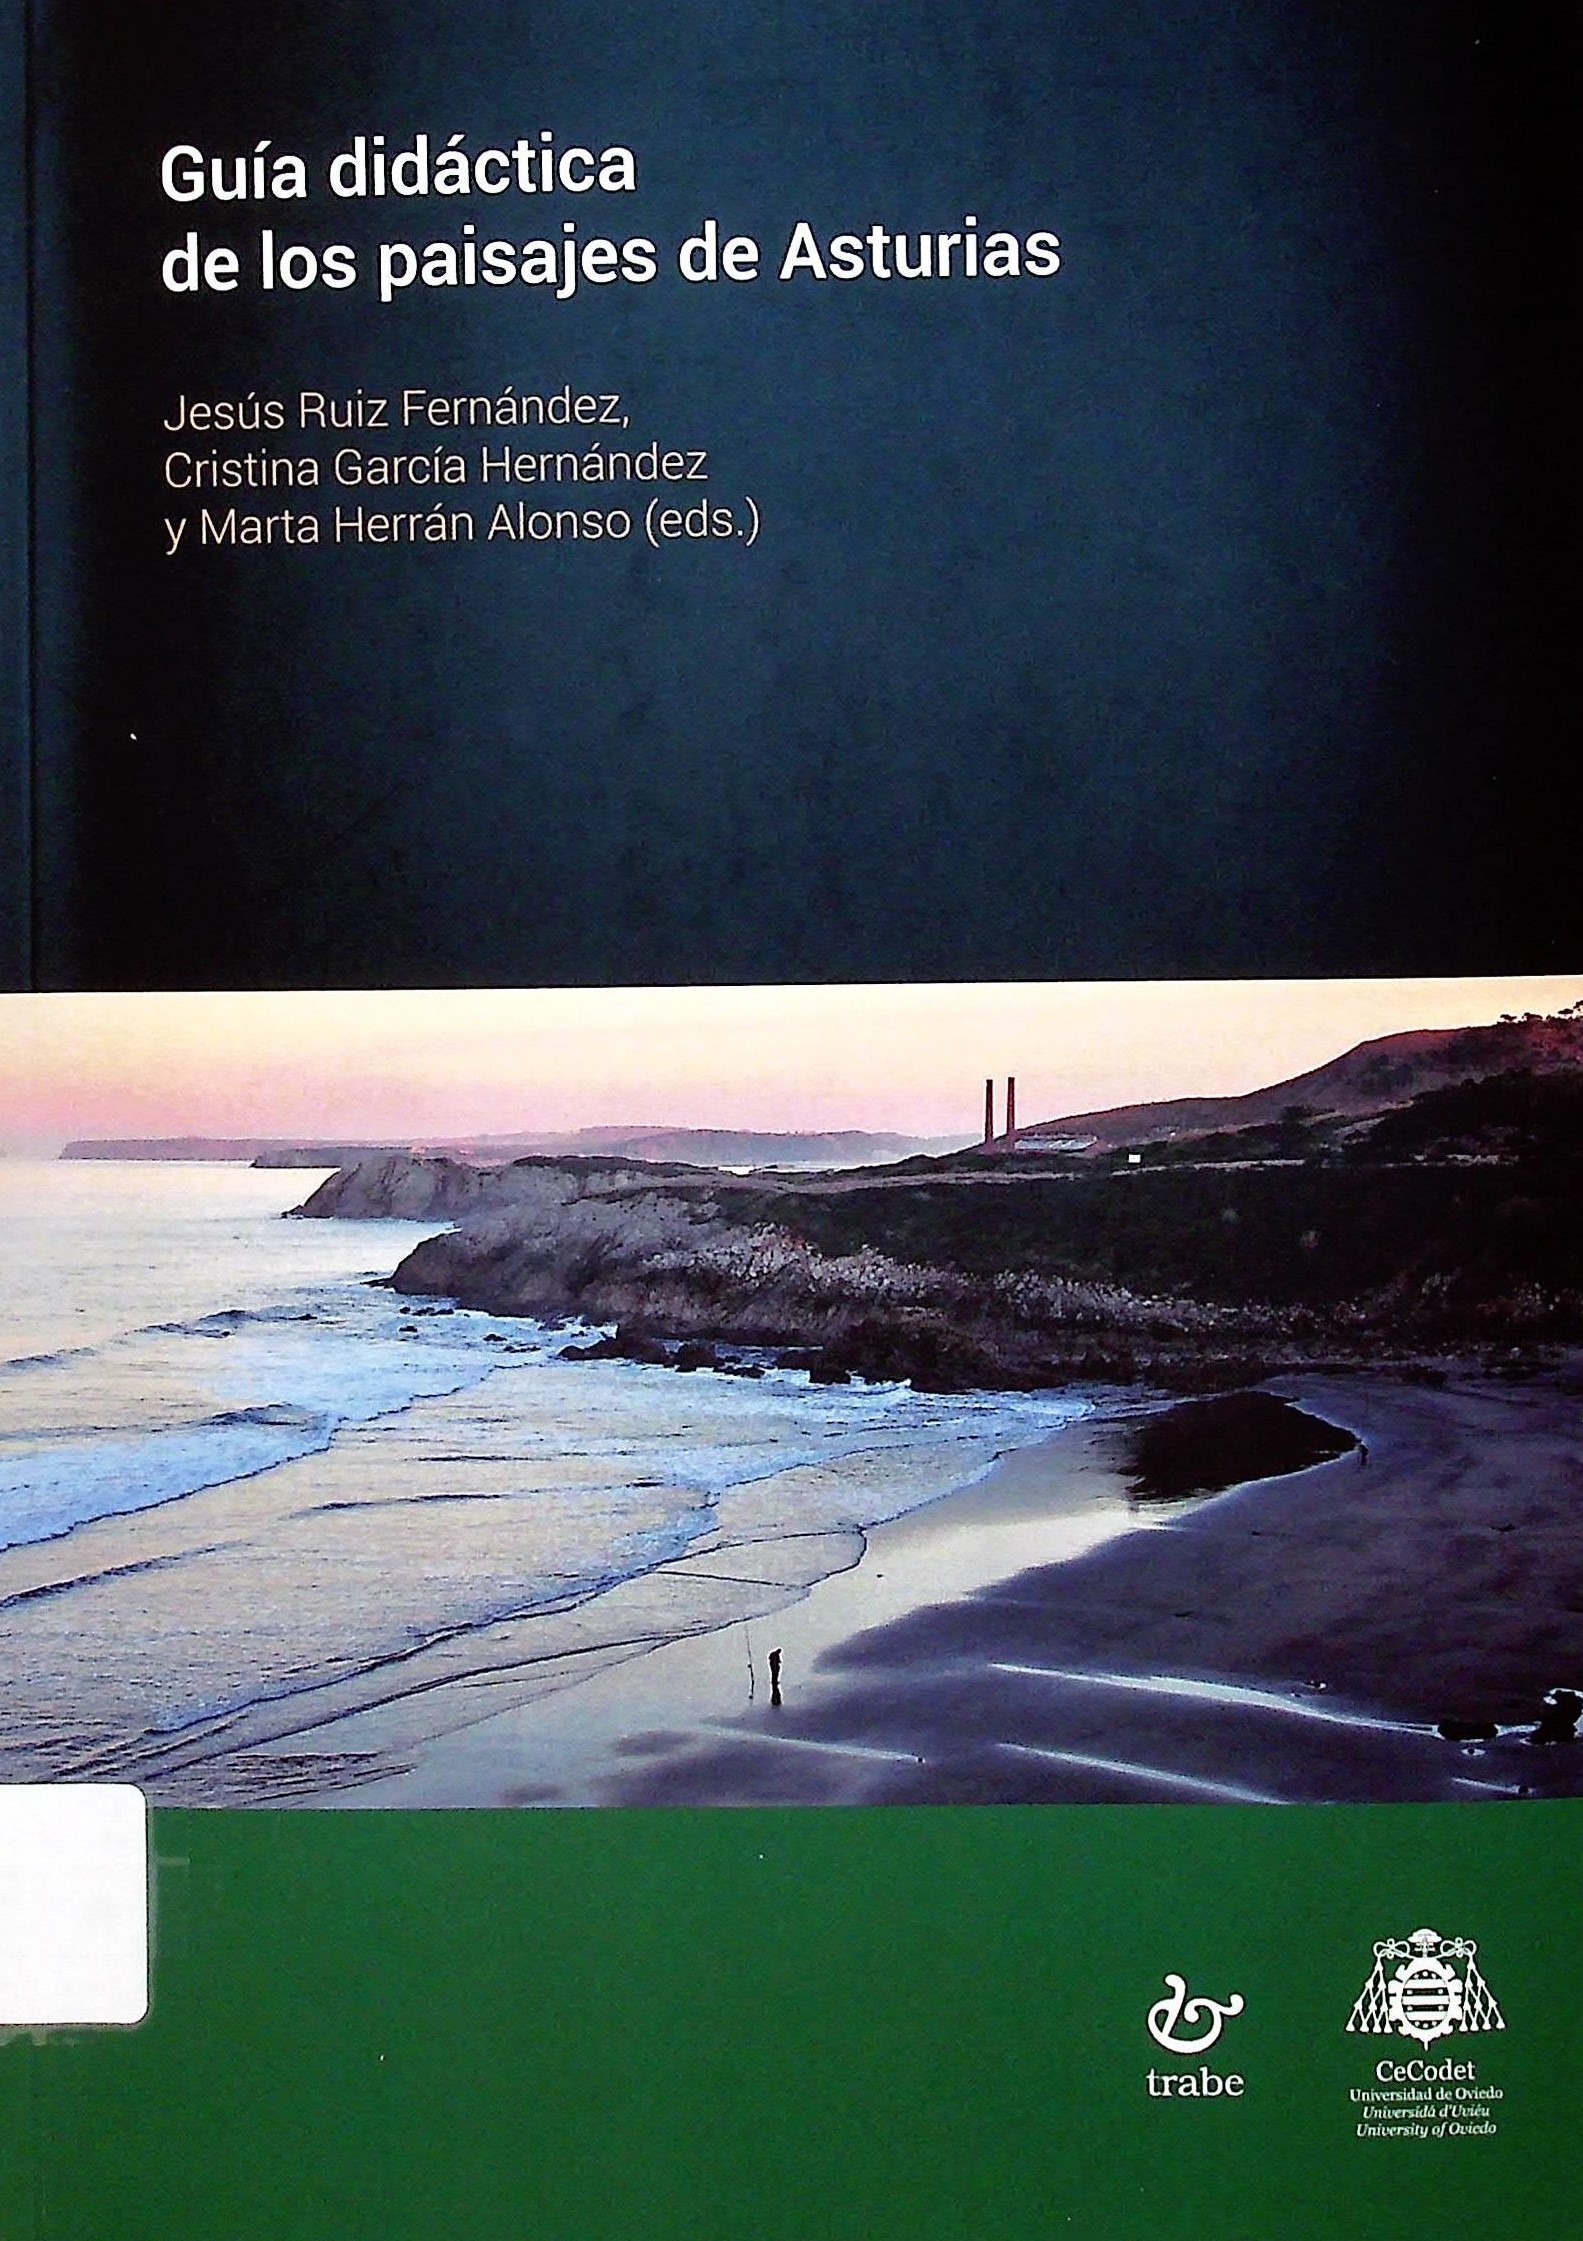 Imagen de portada del libro Guía didáctica de los paisajes de Asturias